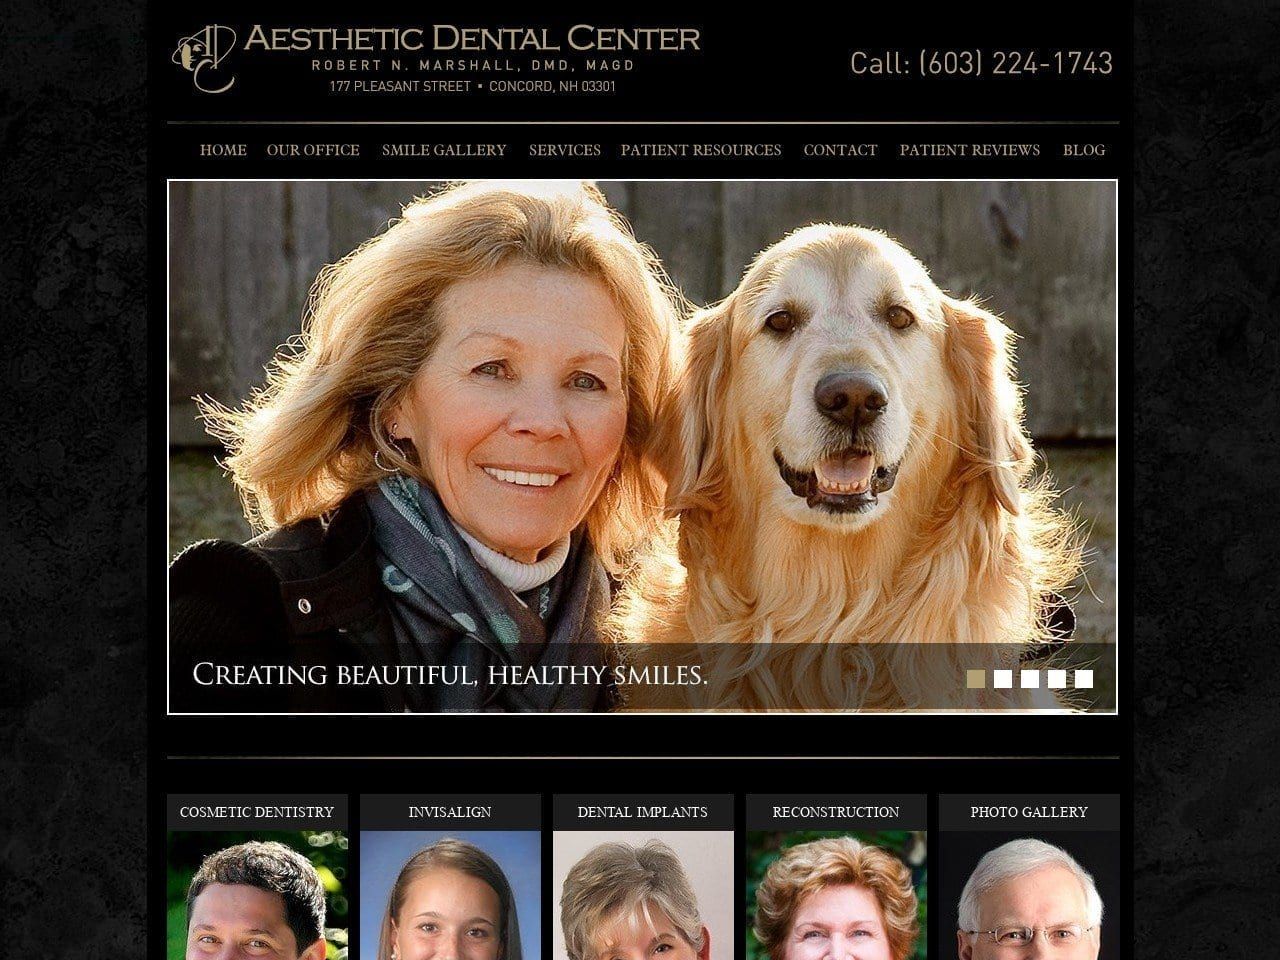 Aesthetic Dental Center Website Screenshot from aestheticdentalcenter.com